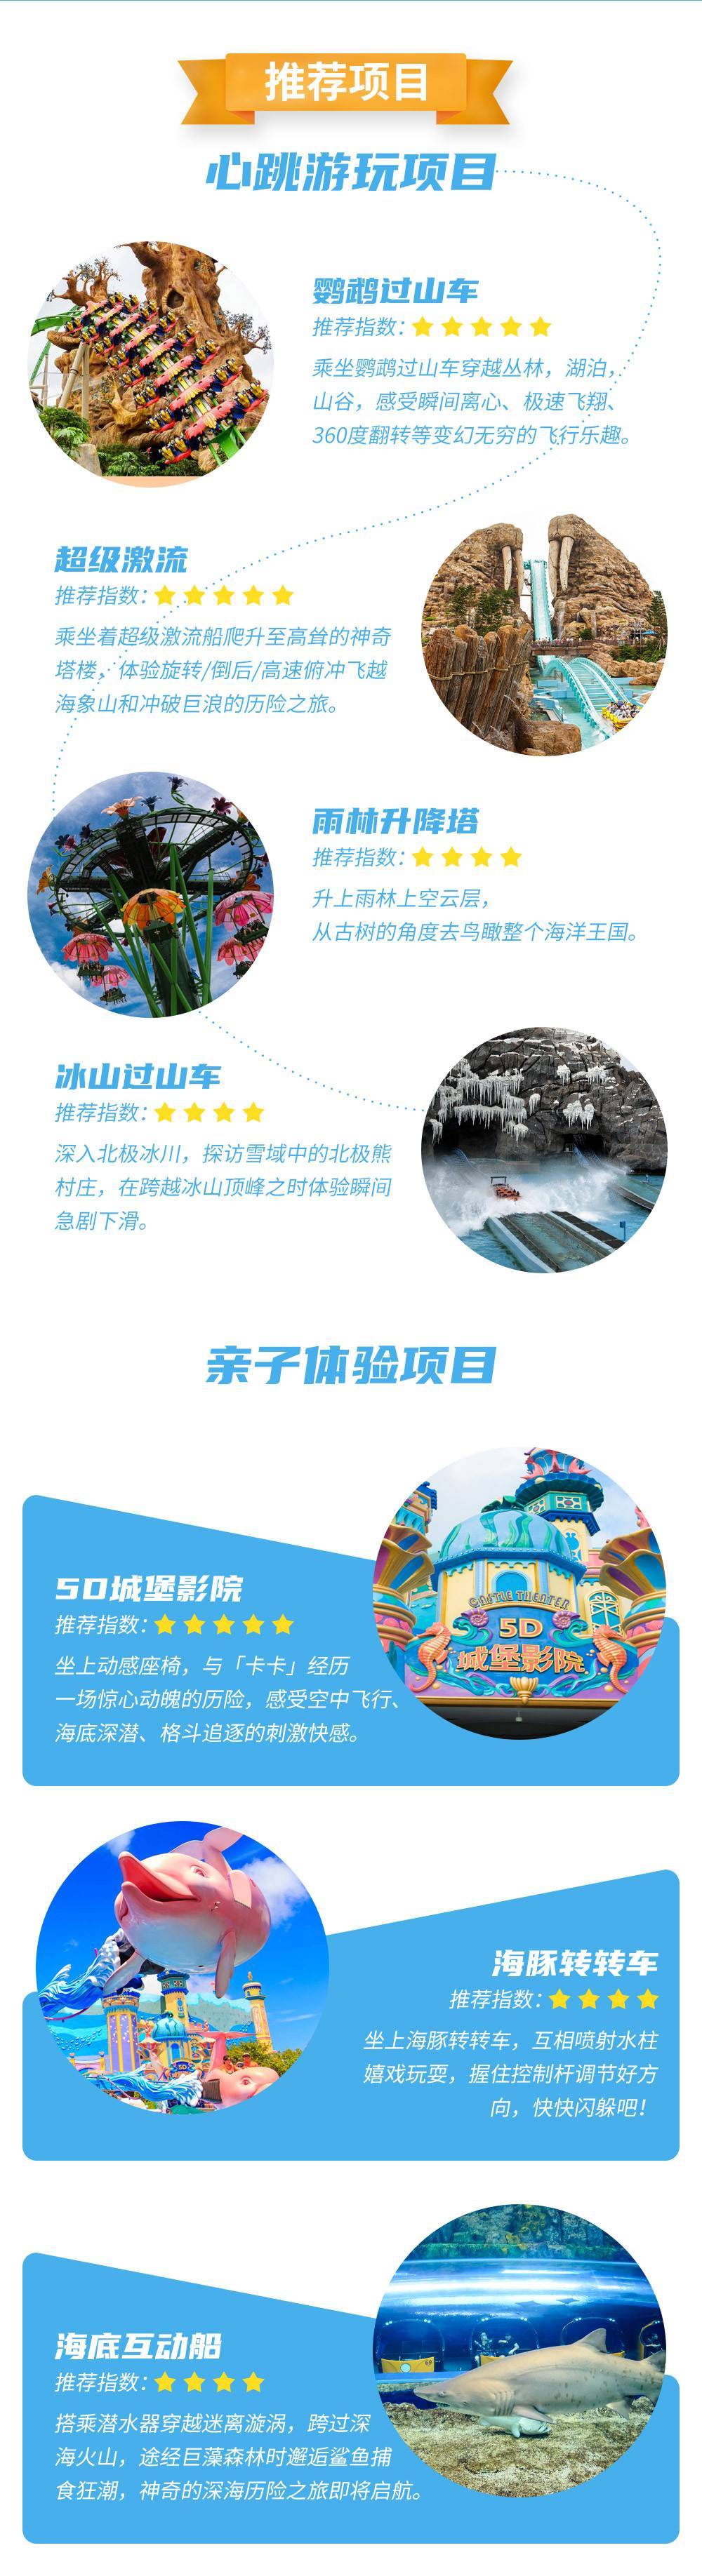 【暑期特惠】珠海长隆海洋王国 1 日两次票+企鹅酒店自助 午餐 标准套票